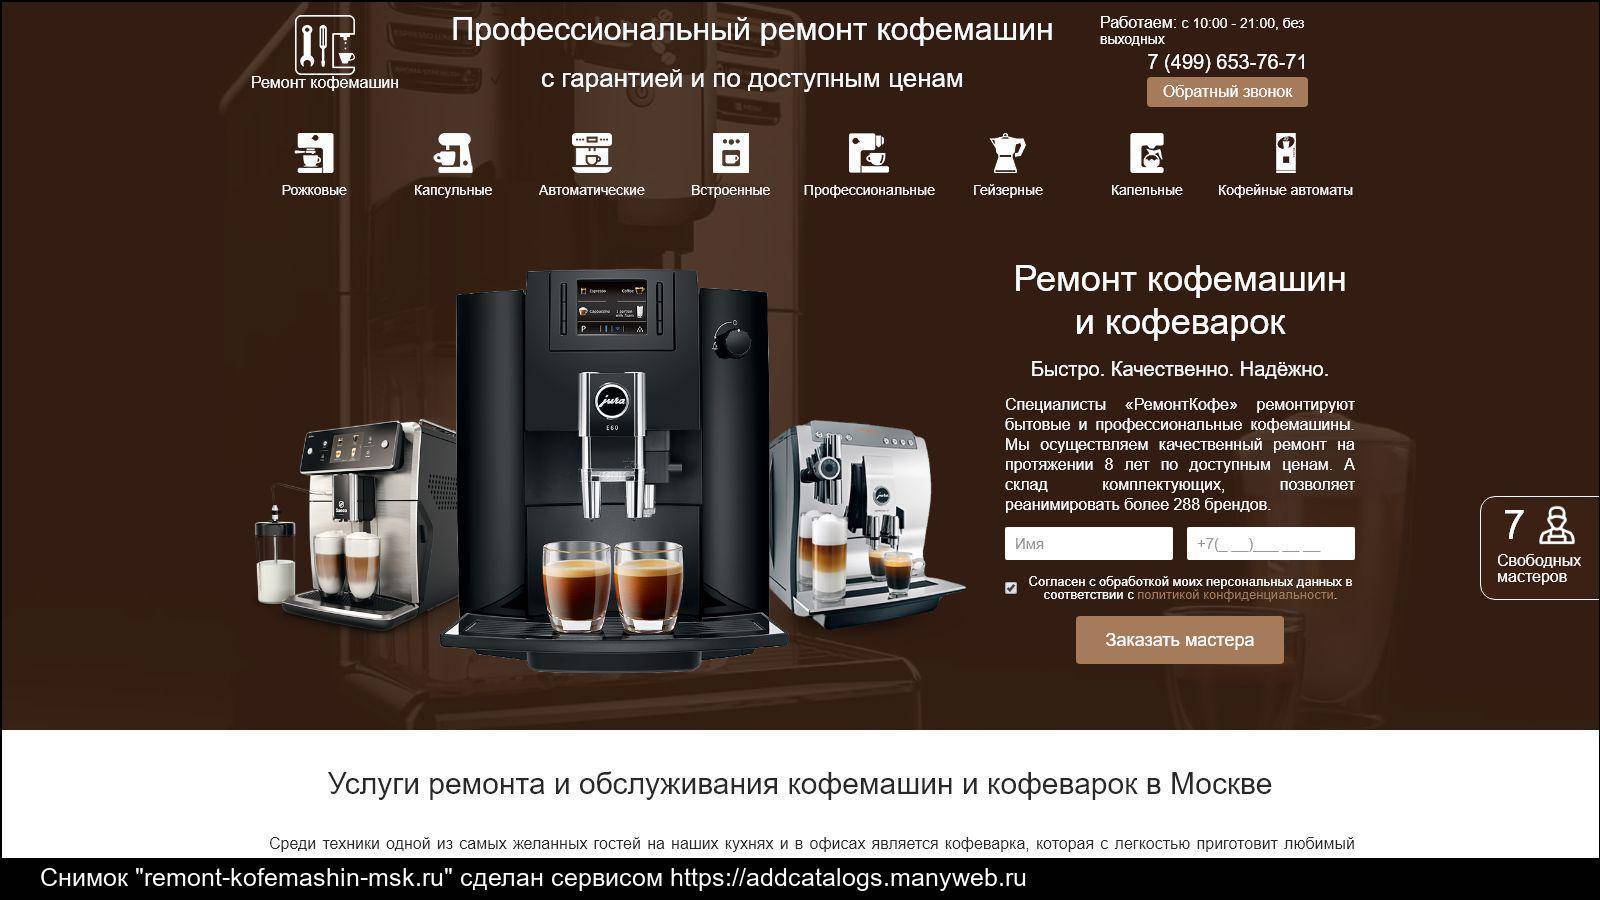 Рейтинг капсульных кофеварок по отзывам покупателей